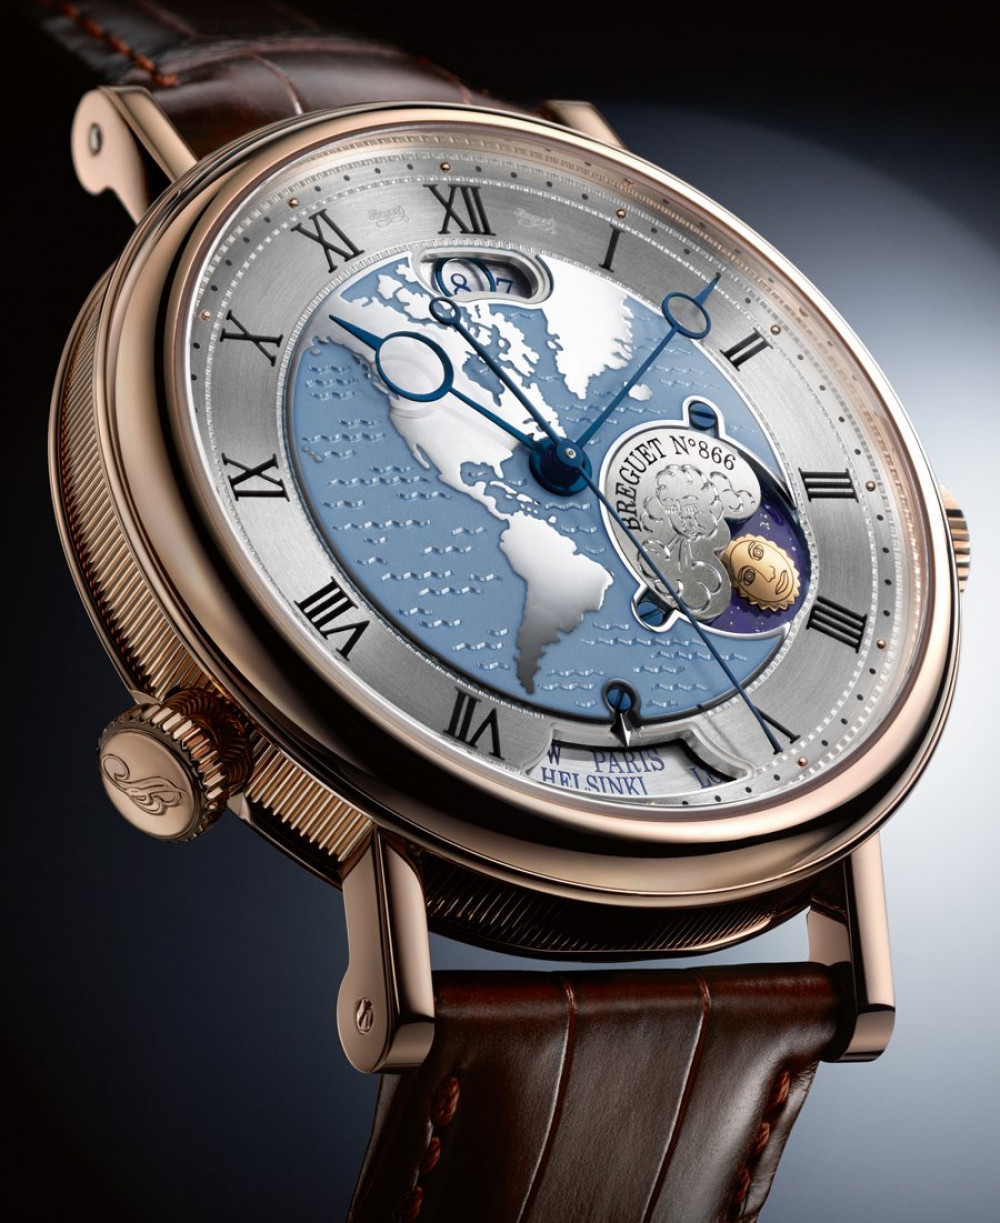 Zegarek firmy Breguet, model Classique Hora Mundi